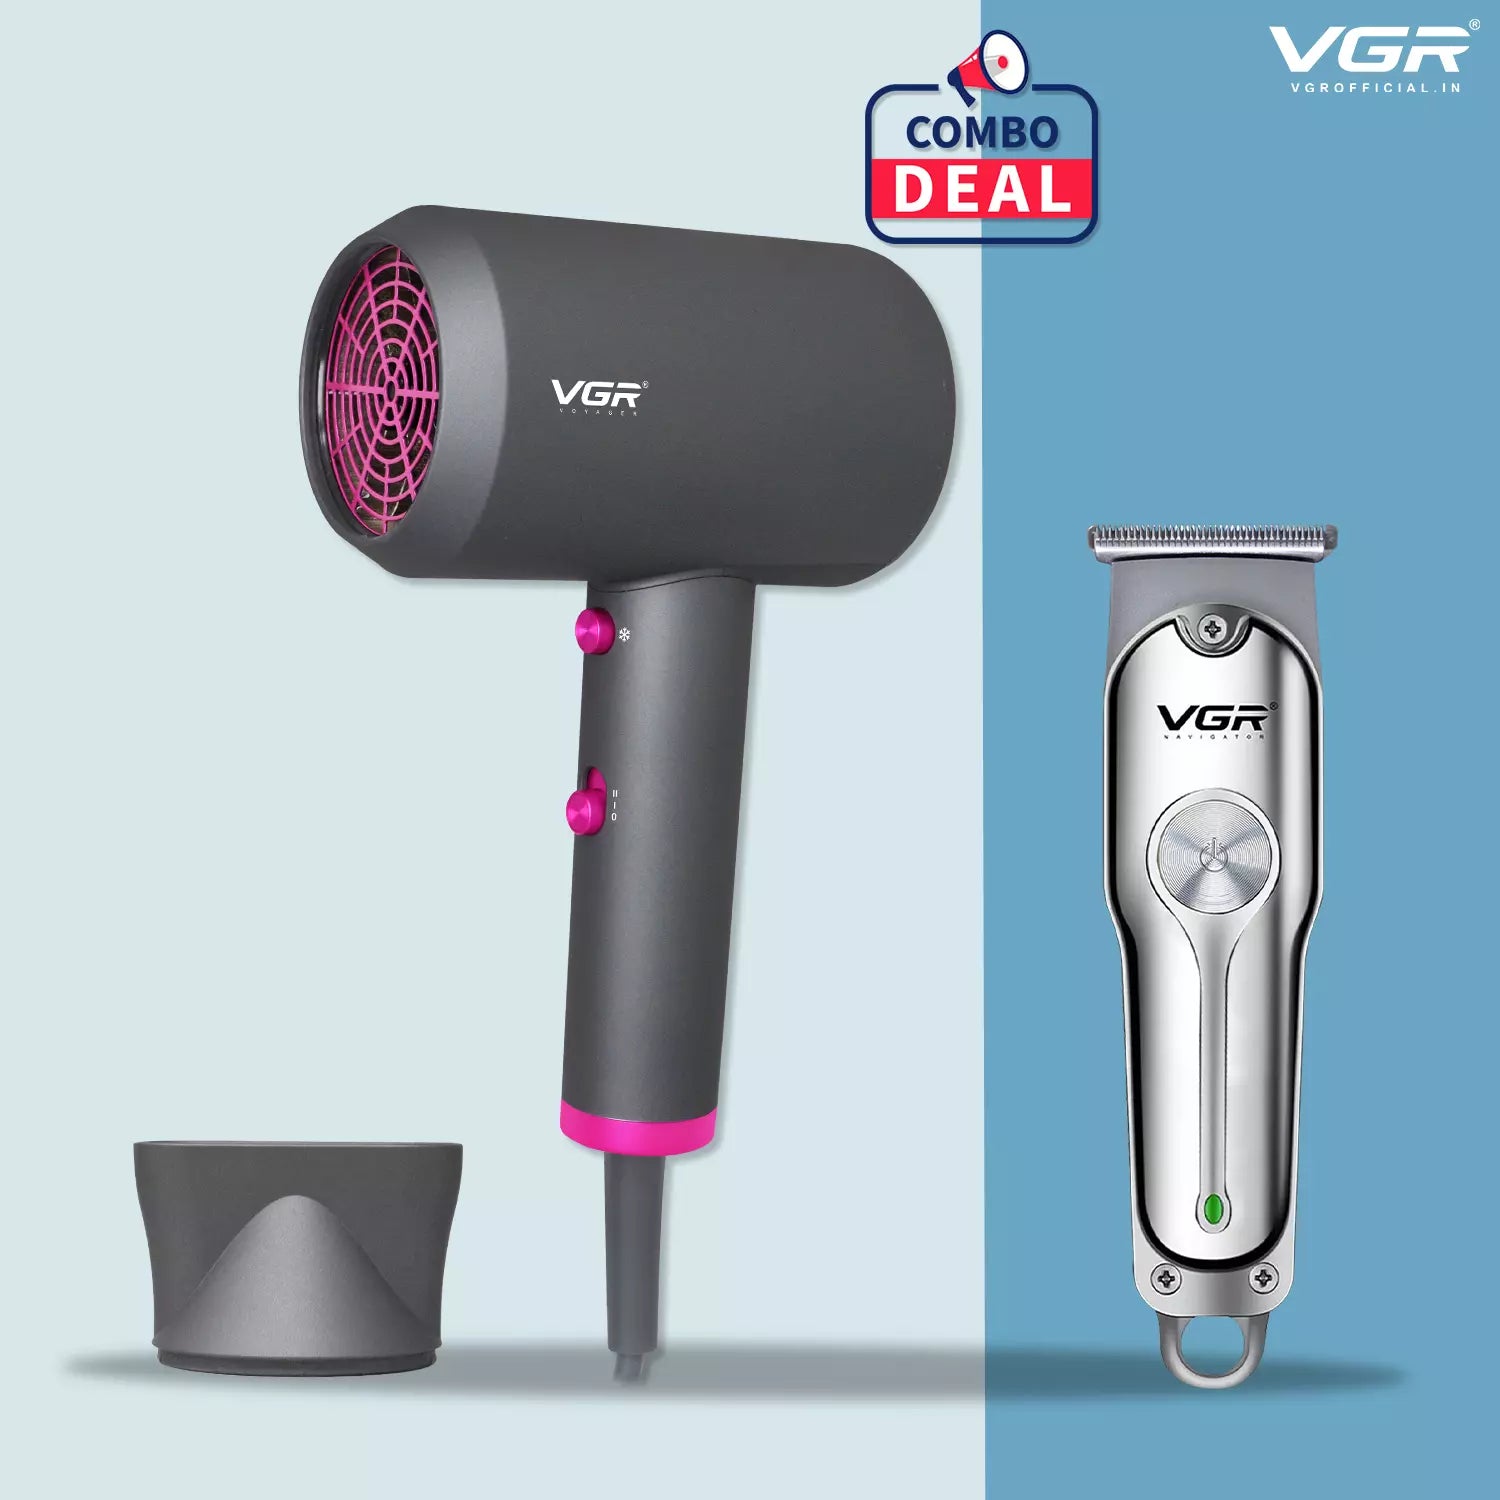 VGR V-071 Hair Trimmer With VGR V-400 Hair Dryer Combo Deal